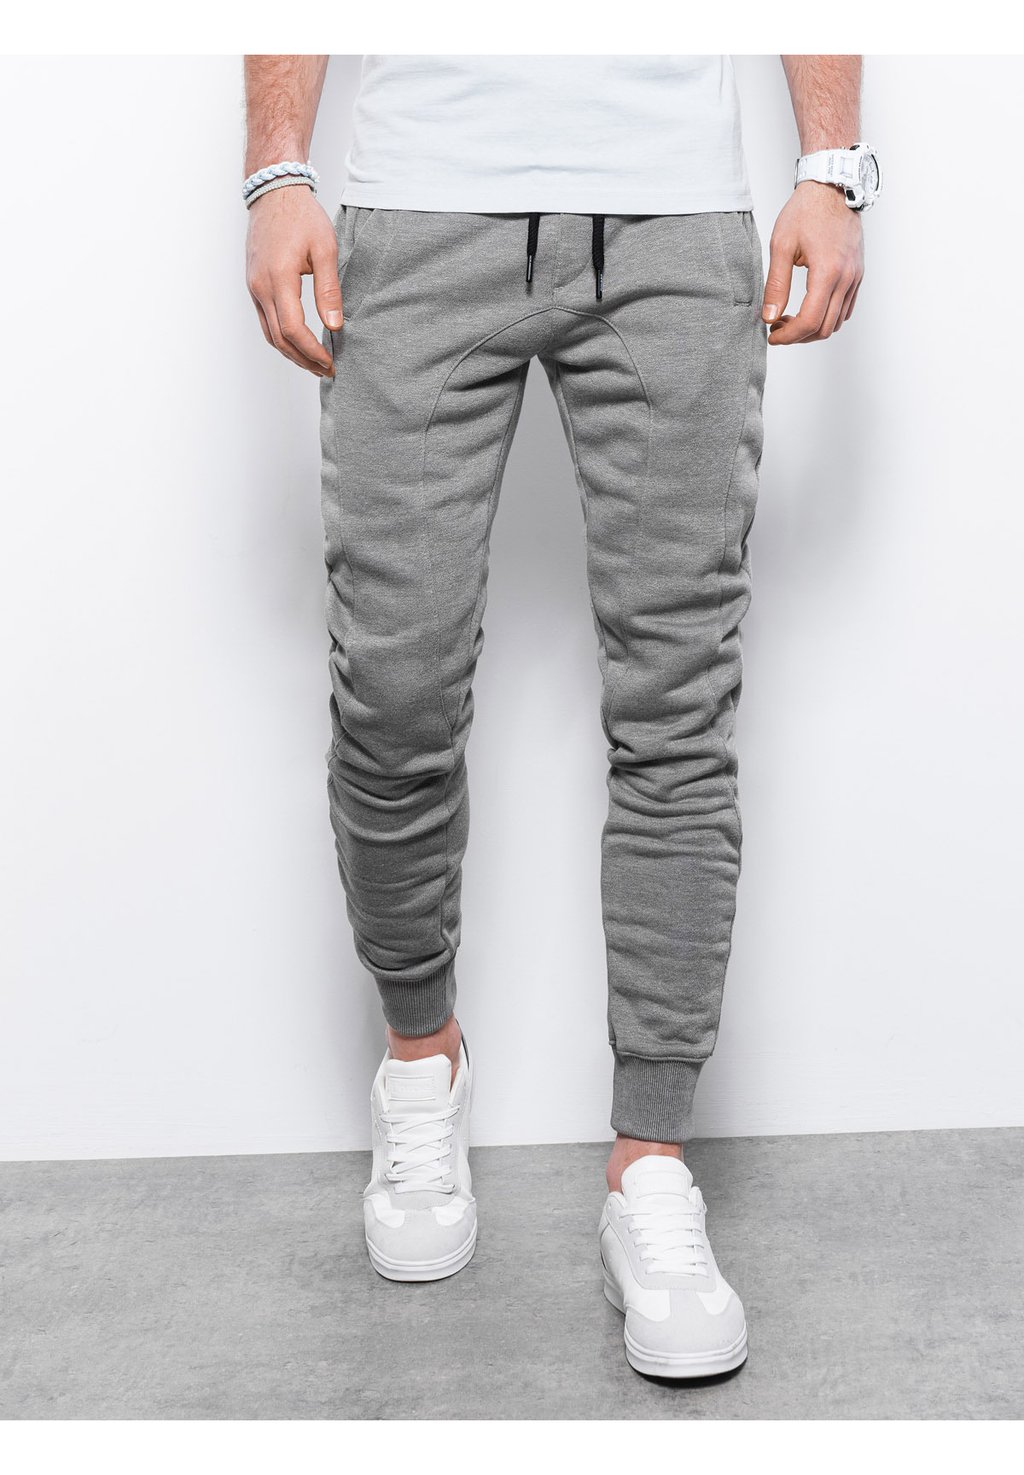 Спортивные брюки Ombre, серый меланж спортивные брюки с контрастами ombre серый